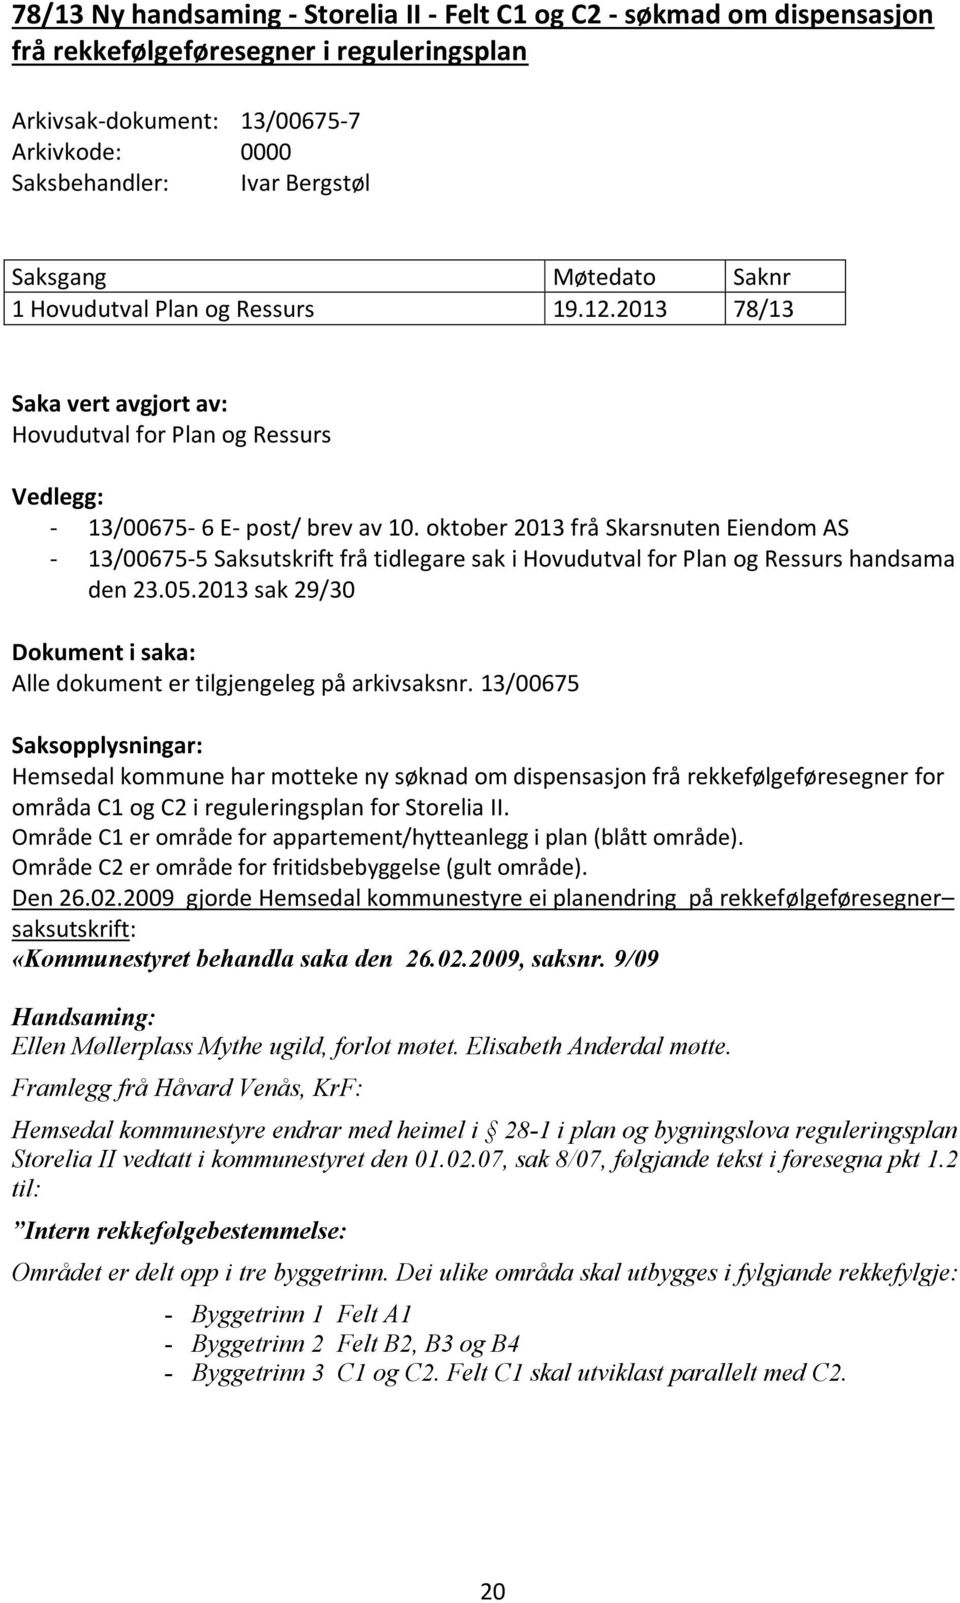 oktober 2013 frå Skarsnuten Eiendom AS - 13/00675-5 Saksutskrift frå tidlegare sak i Hovudutval for Plan og Ressurs handsama den 23.05.